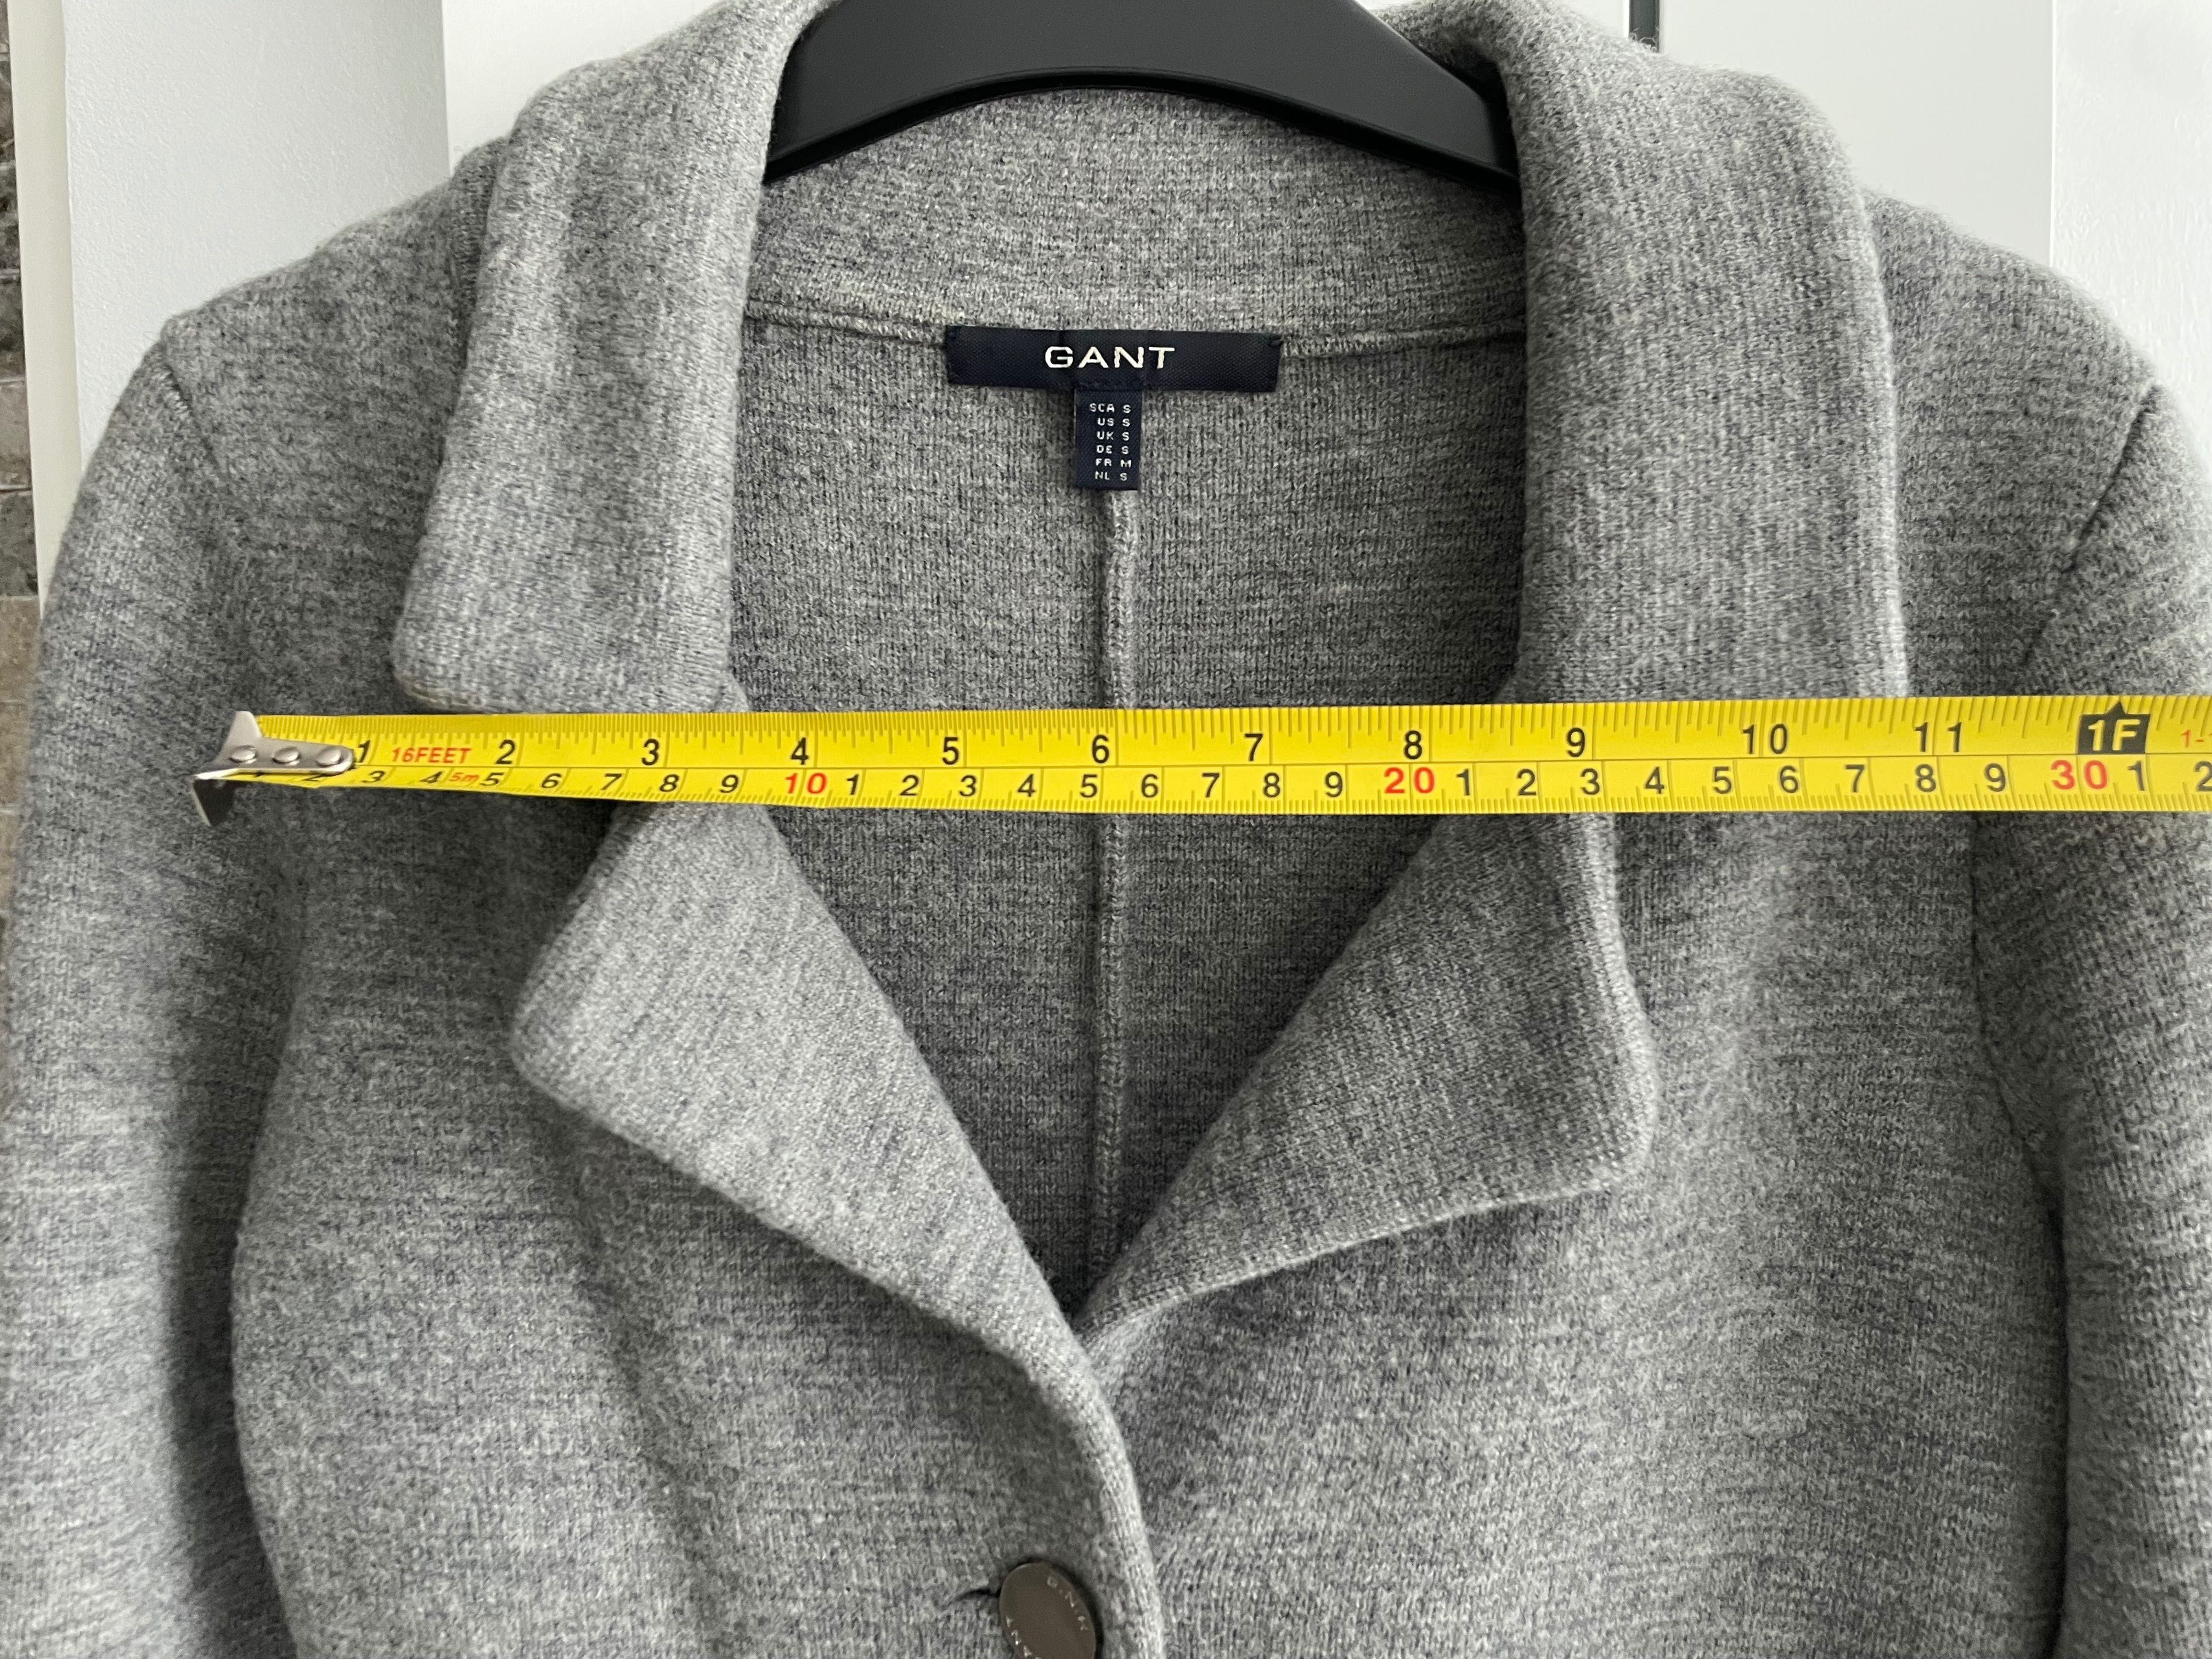 Gant, wool 100%, knit blaser cardigan